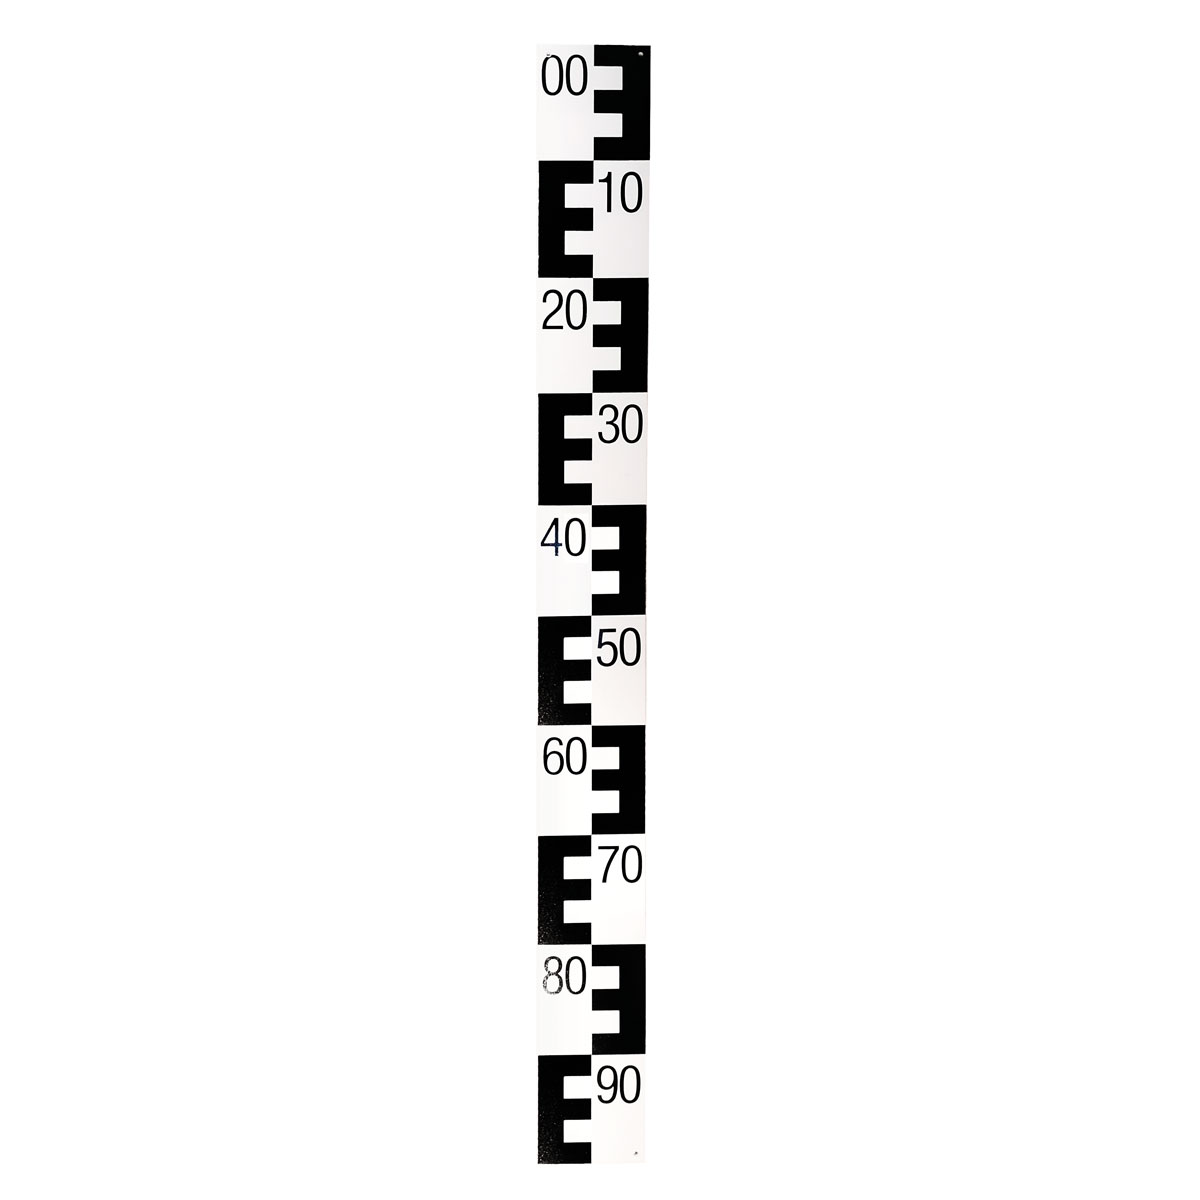 Pegellatte aus Hartkunststoff, Länge 1 m schwarz oben 00 nach unten 90 absteigend, 10 cm breit